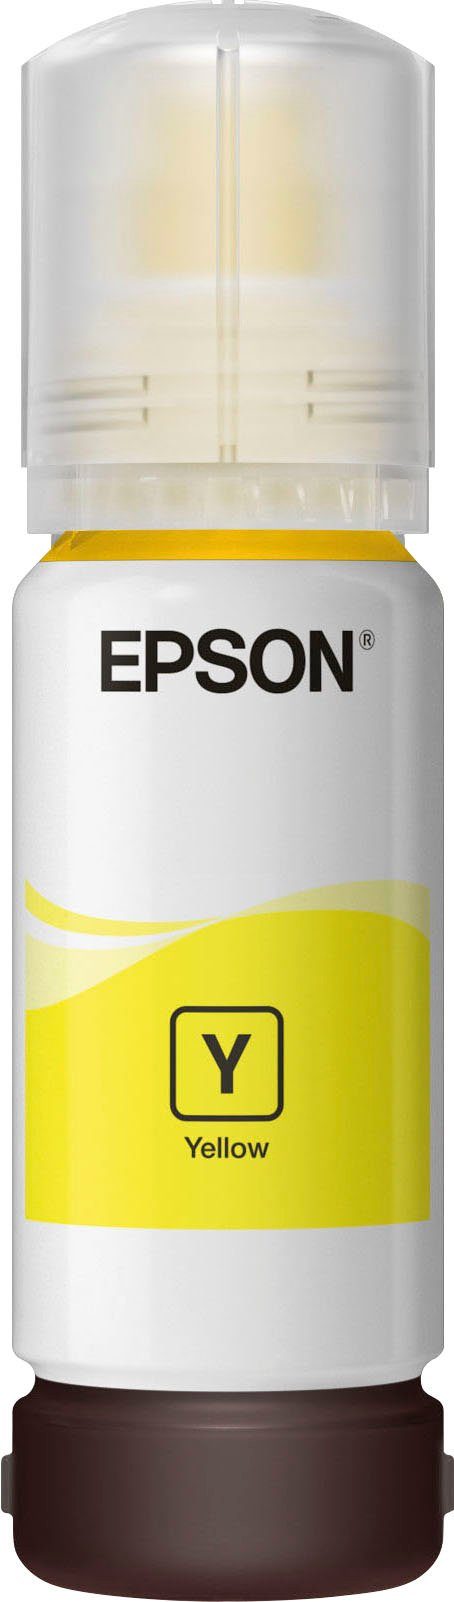 original EPSON, (für Yellow 102 gelb) Epson EcoTank 1x, Nachfülltinte 102 Nachfülltinte